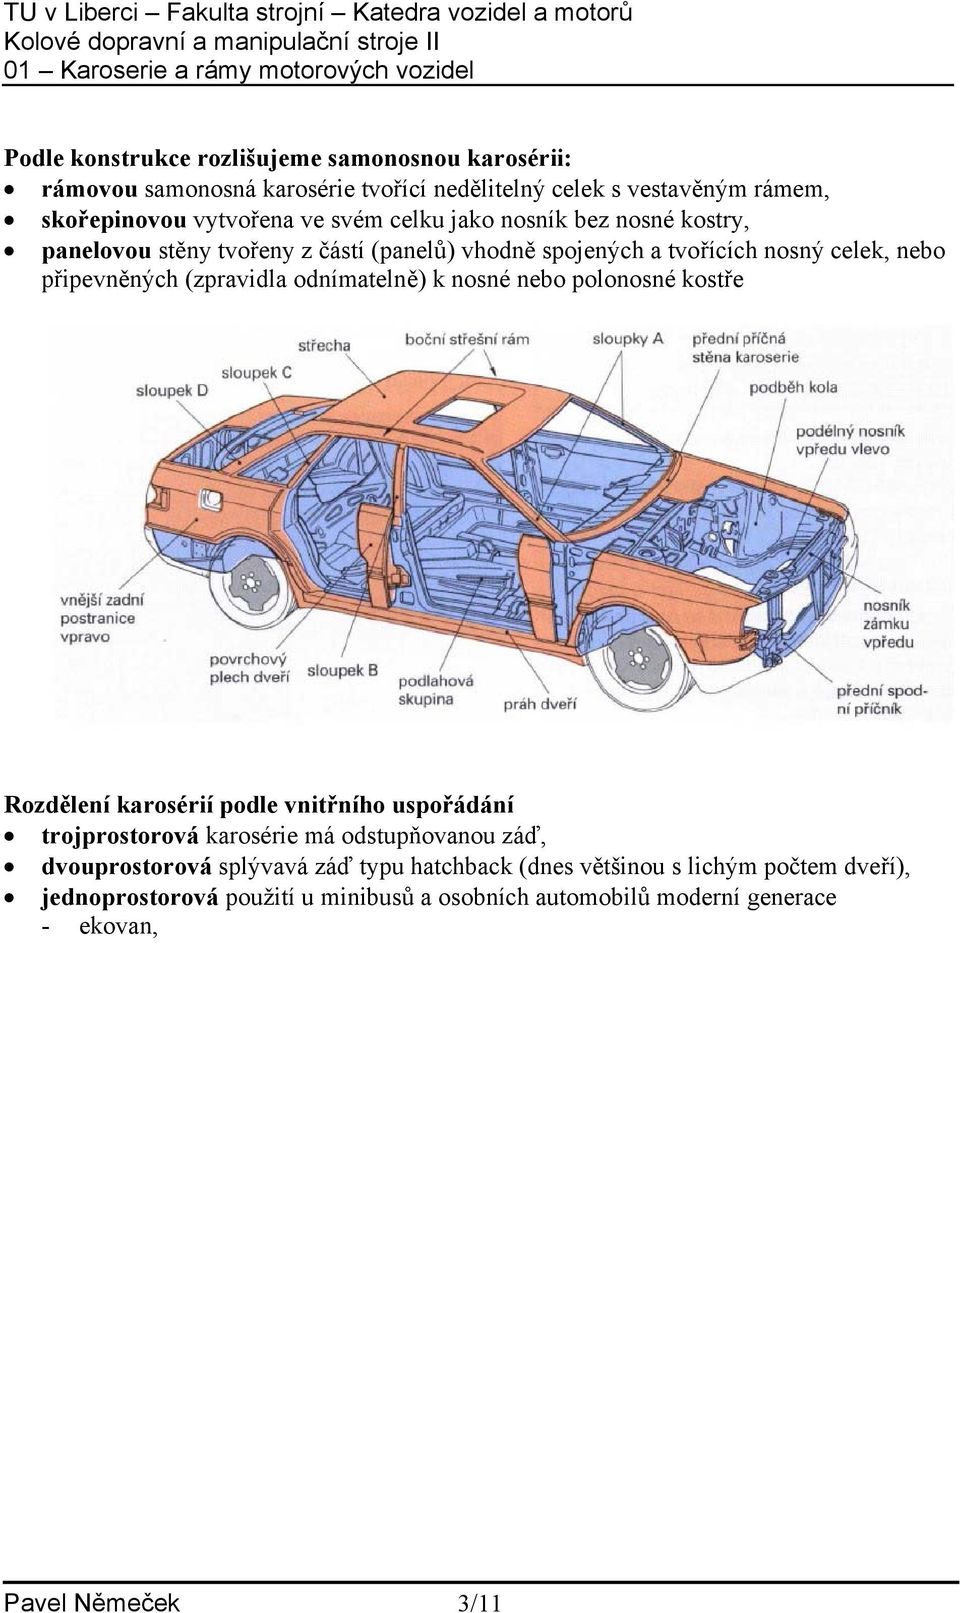 Karoserie a rámy motorových vozidel - PDF Free Download